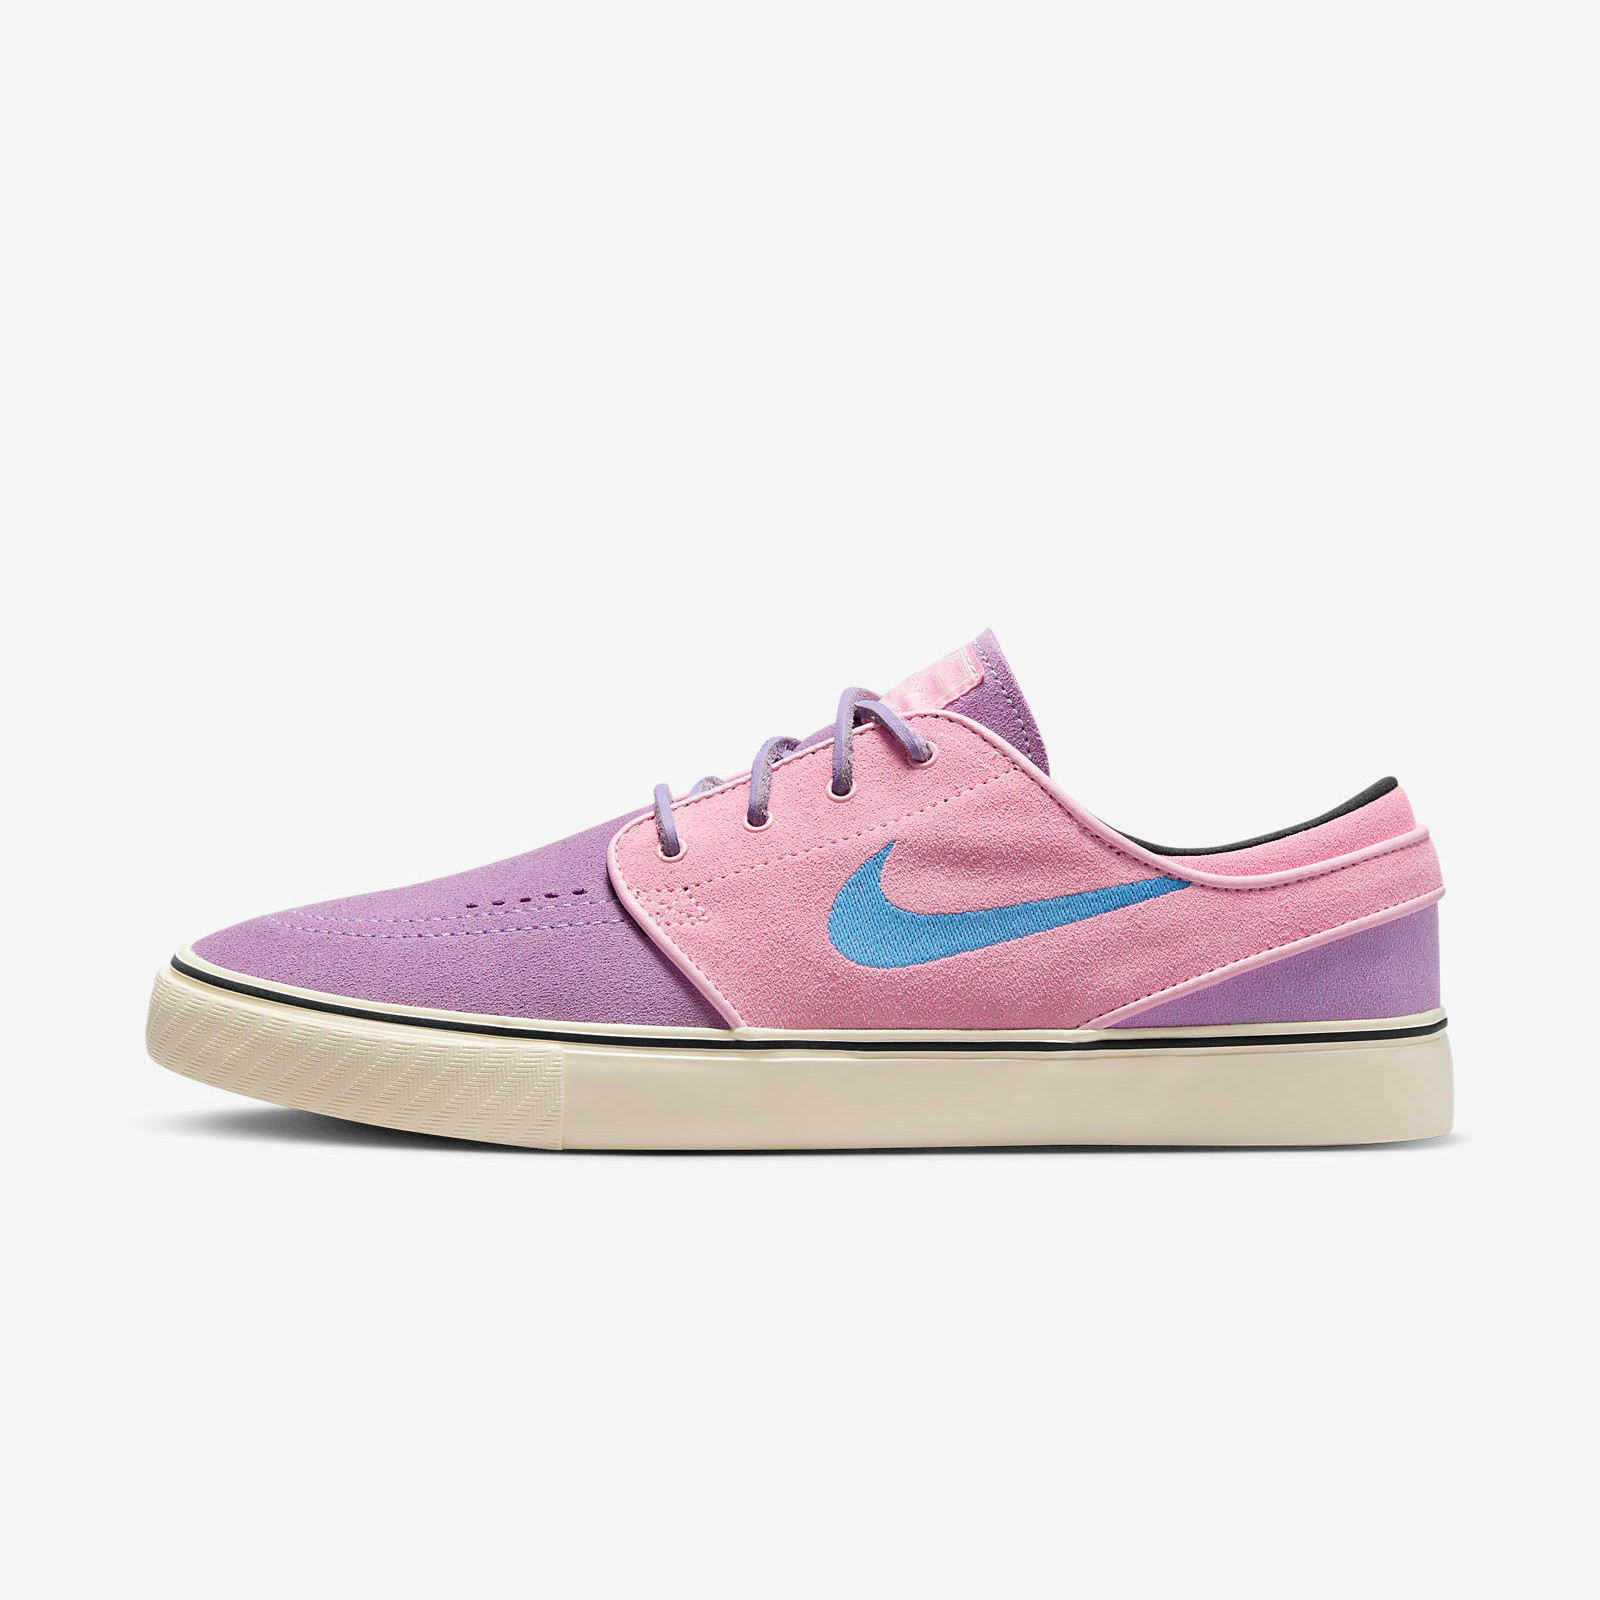 Nike SB Janoski+
Lilac / Pink